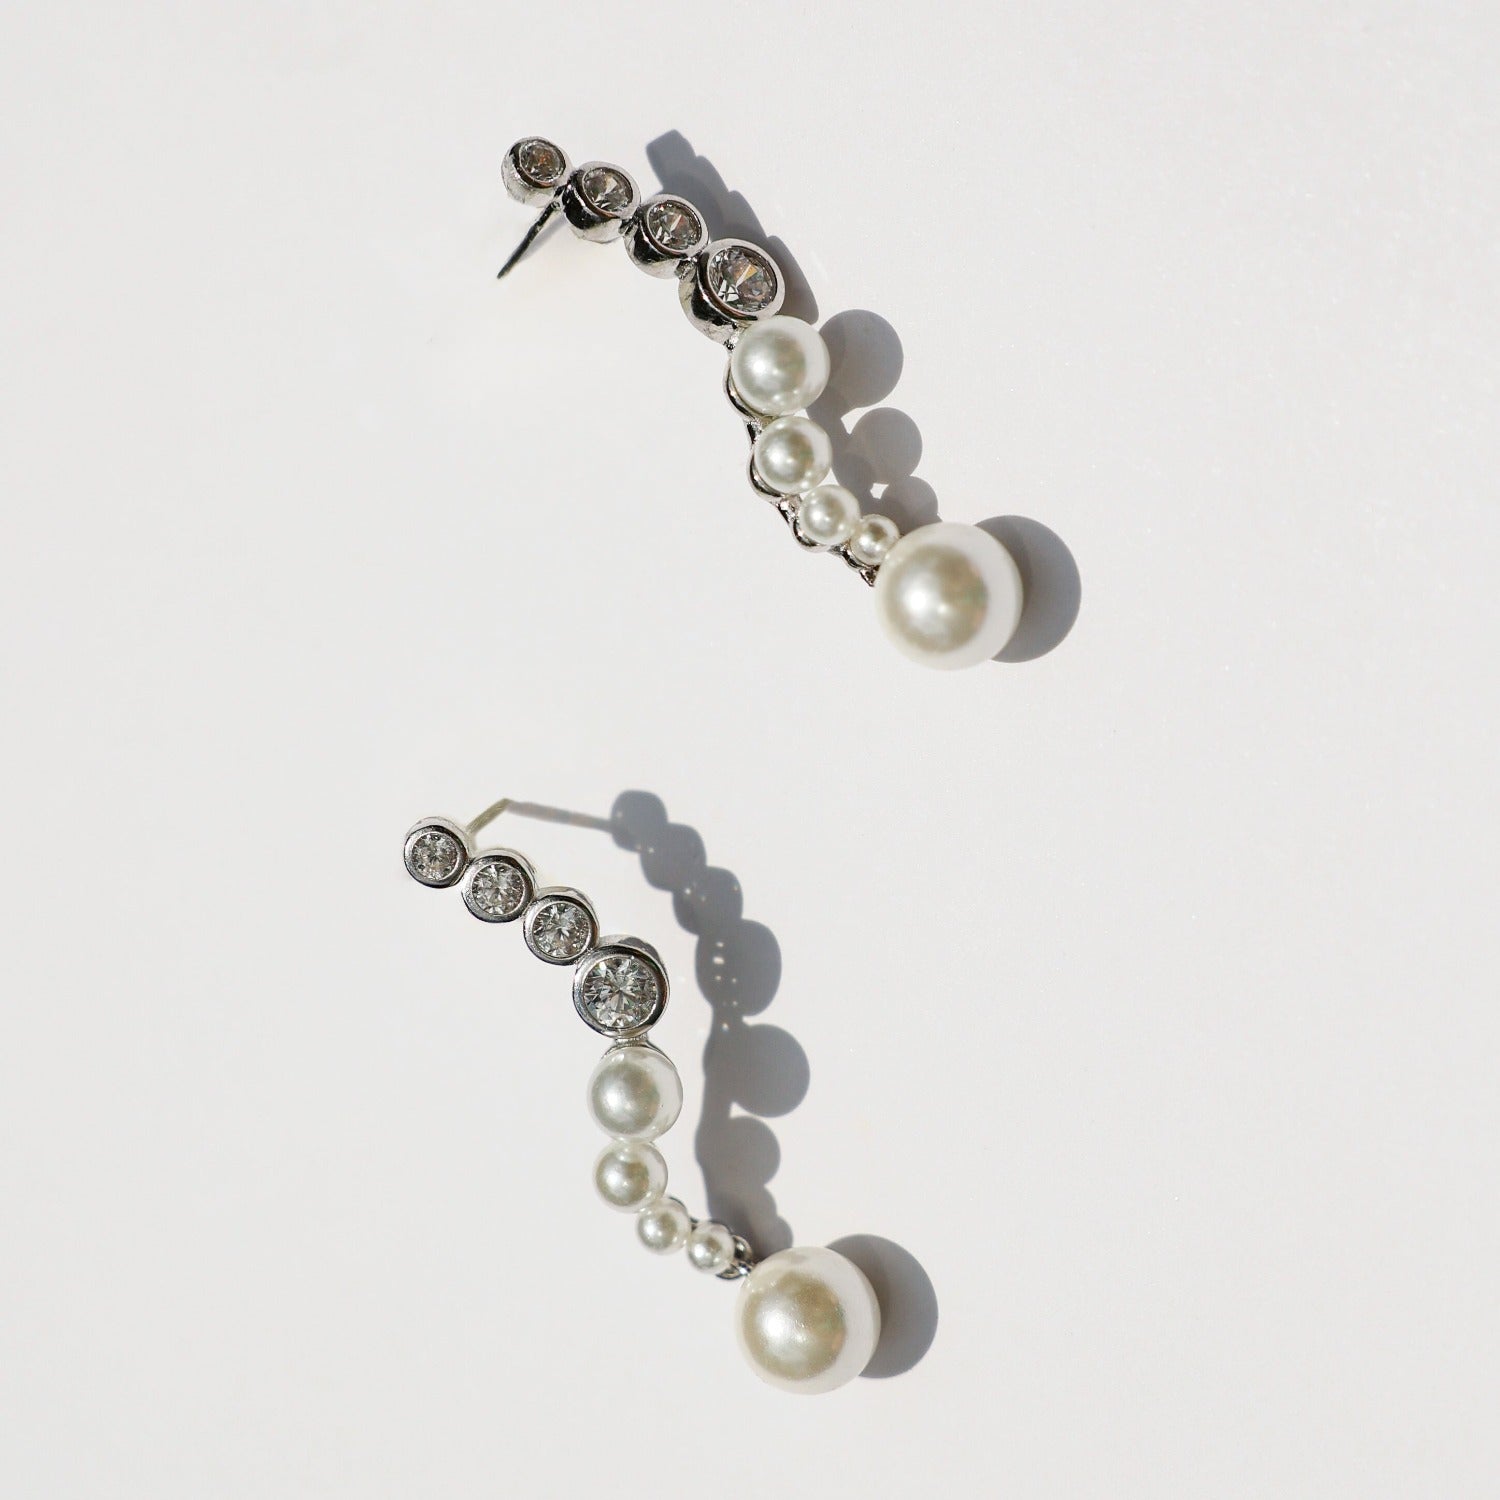 earrings, silver, pearl earrings, wedding gift, gift, silver earrings, fancy earrings, party earrings